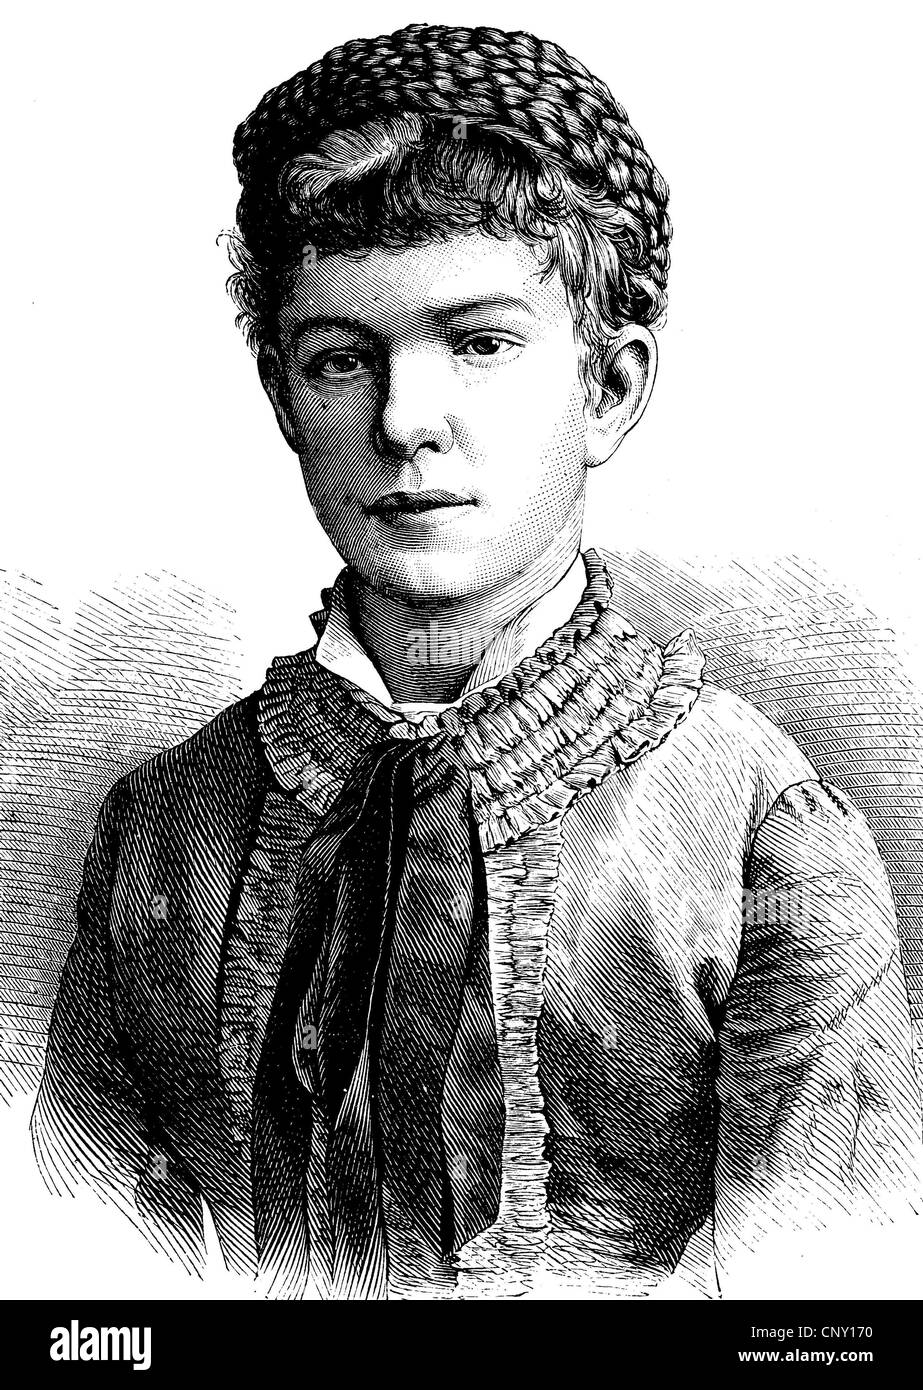 L'arciduchessa Marie Valerie Mathilde Amalie di Austria, 1868 - 1924, figlia dell'austro-ungarici Franz Joseph I. E E Foto Stock